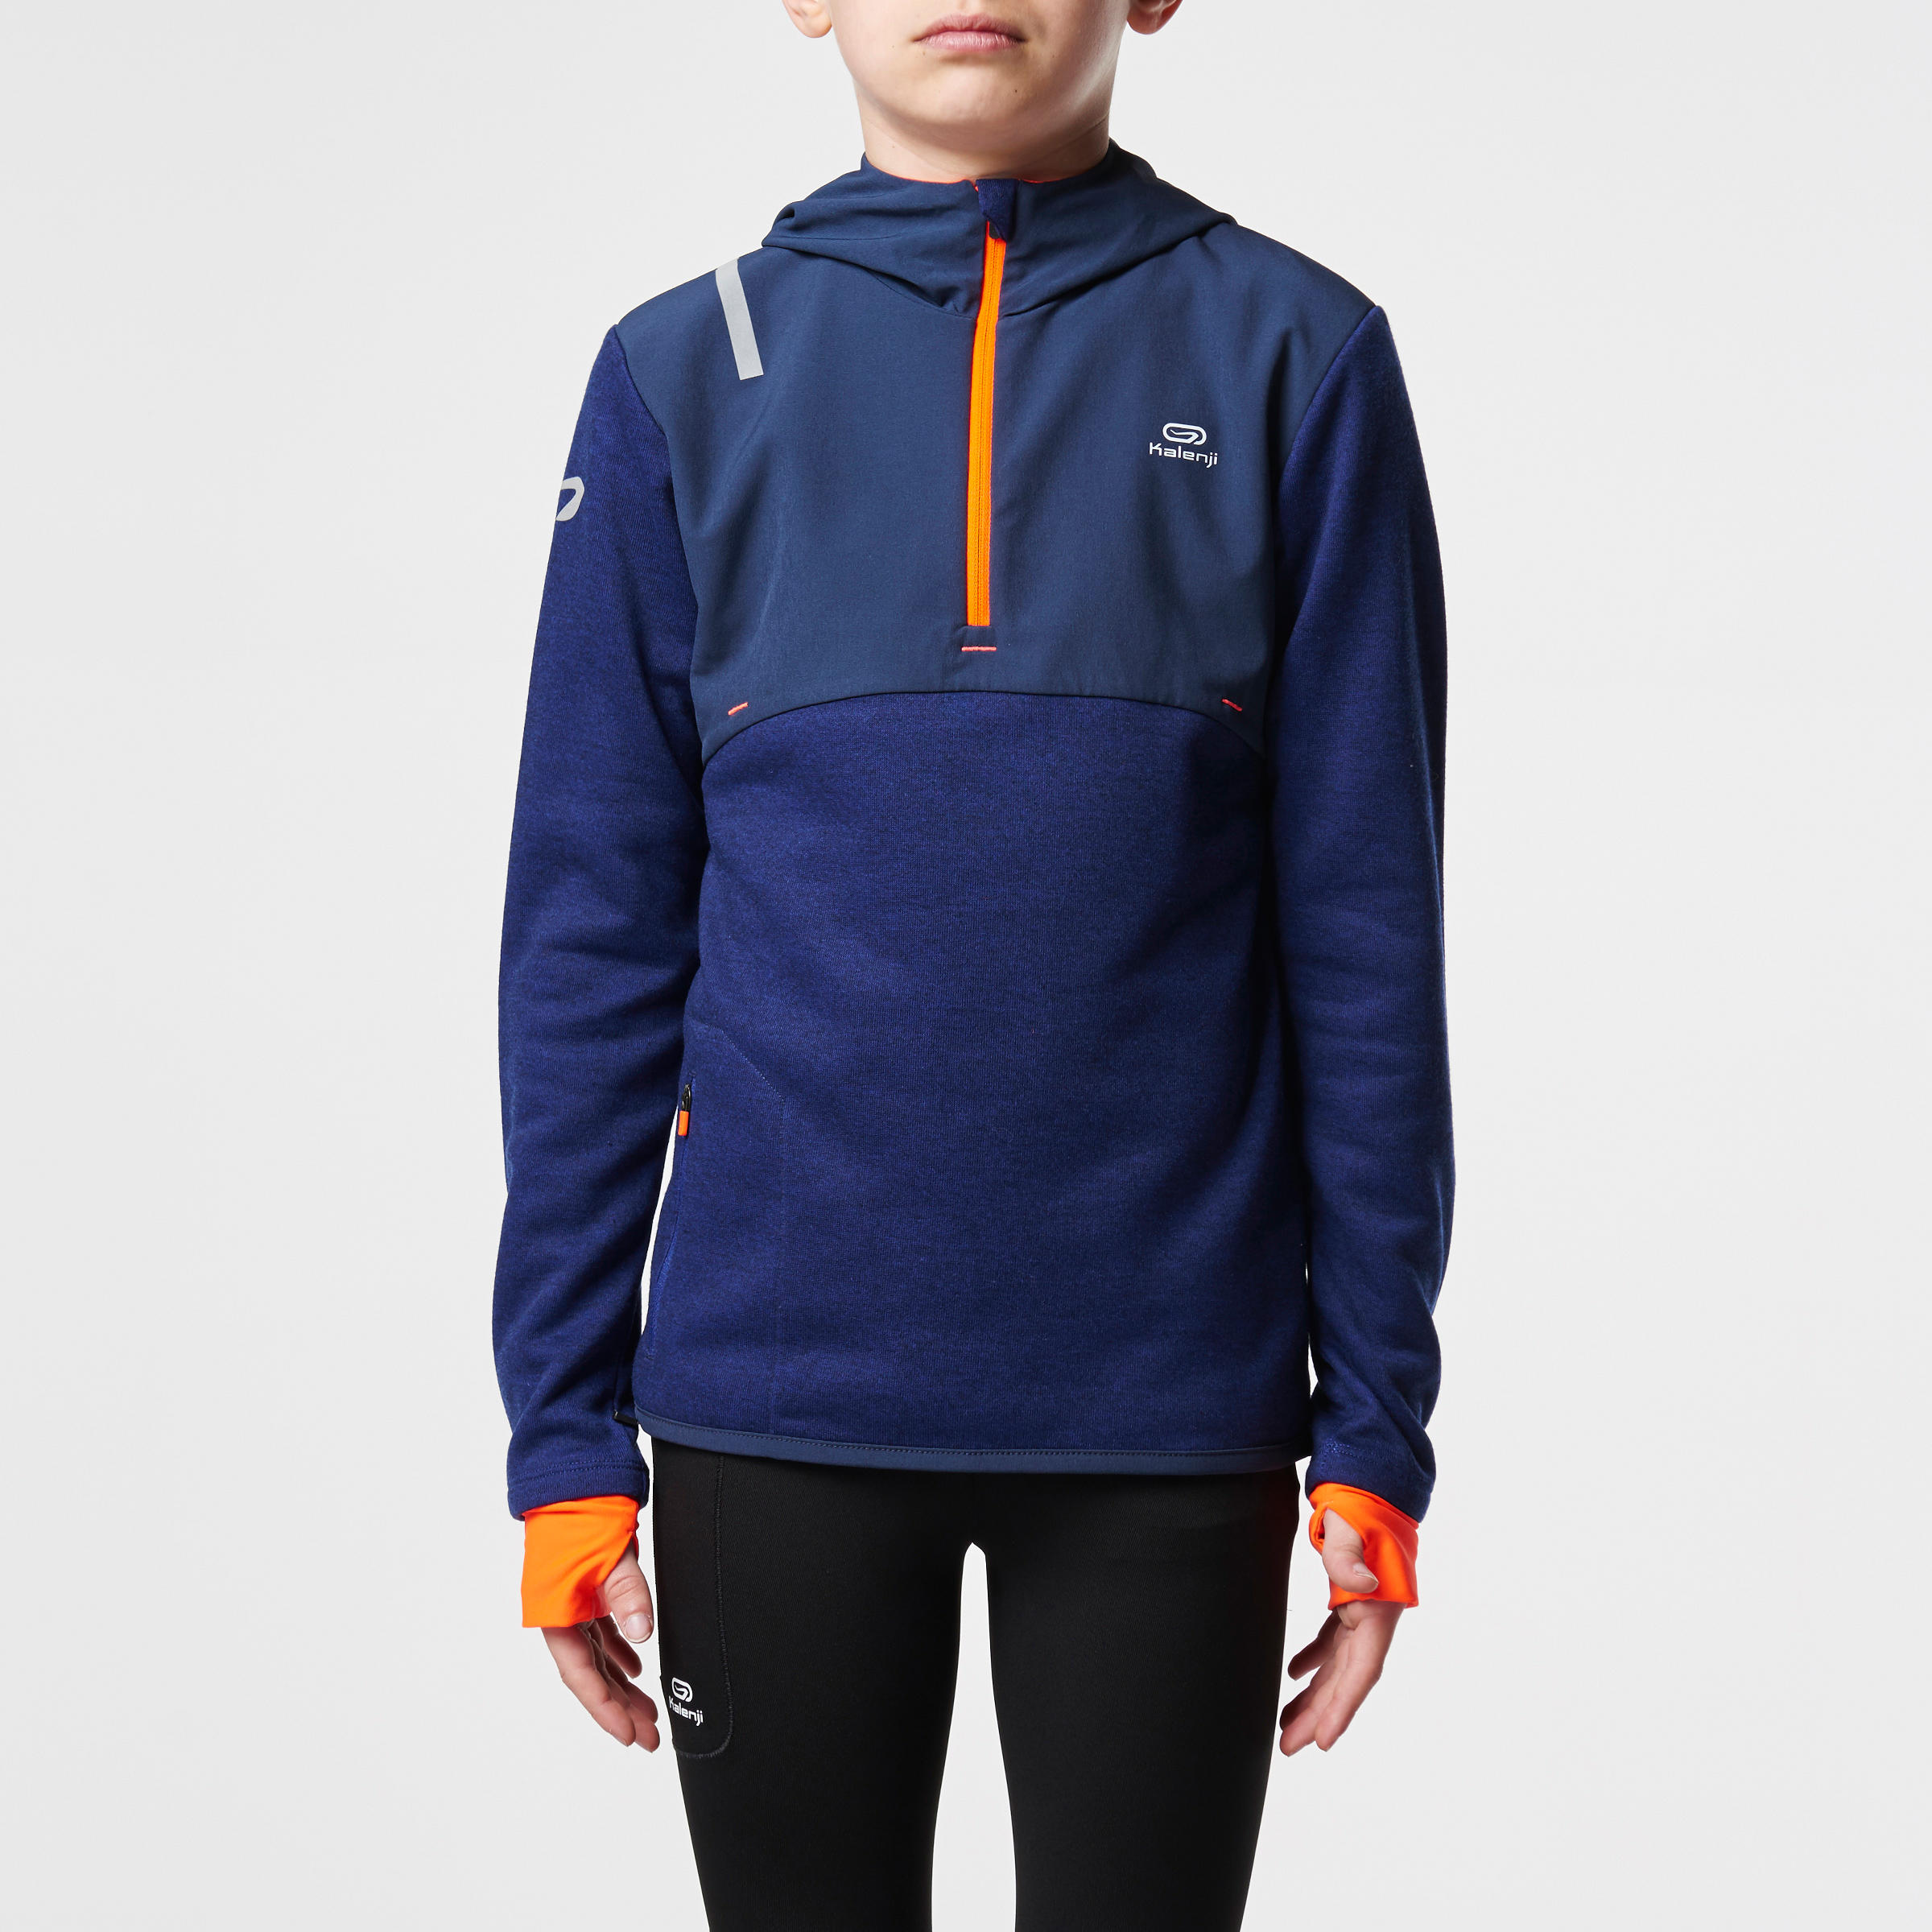 Elio Children's Running Hooded Jersey - Blue/Orange
 2/15